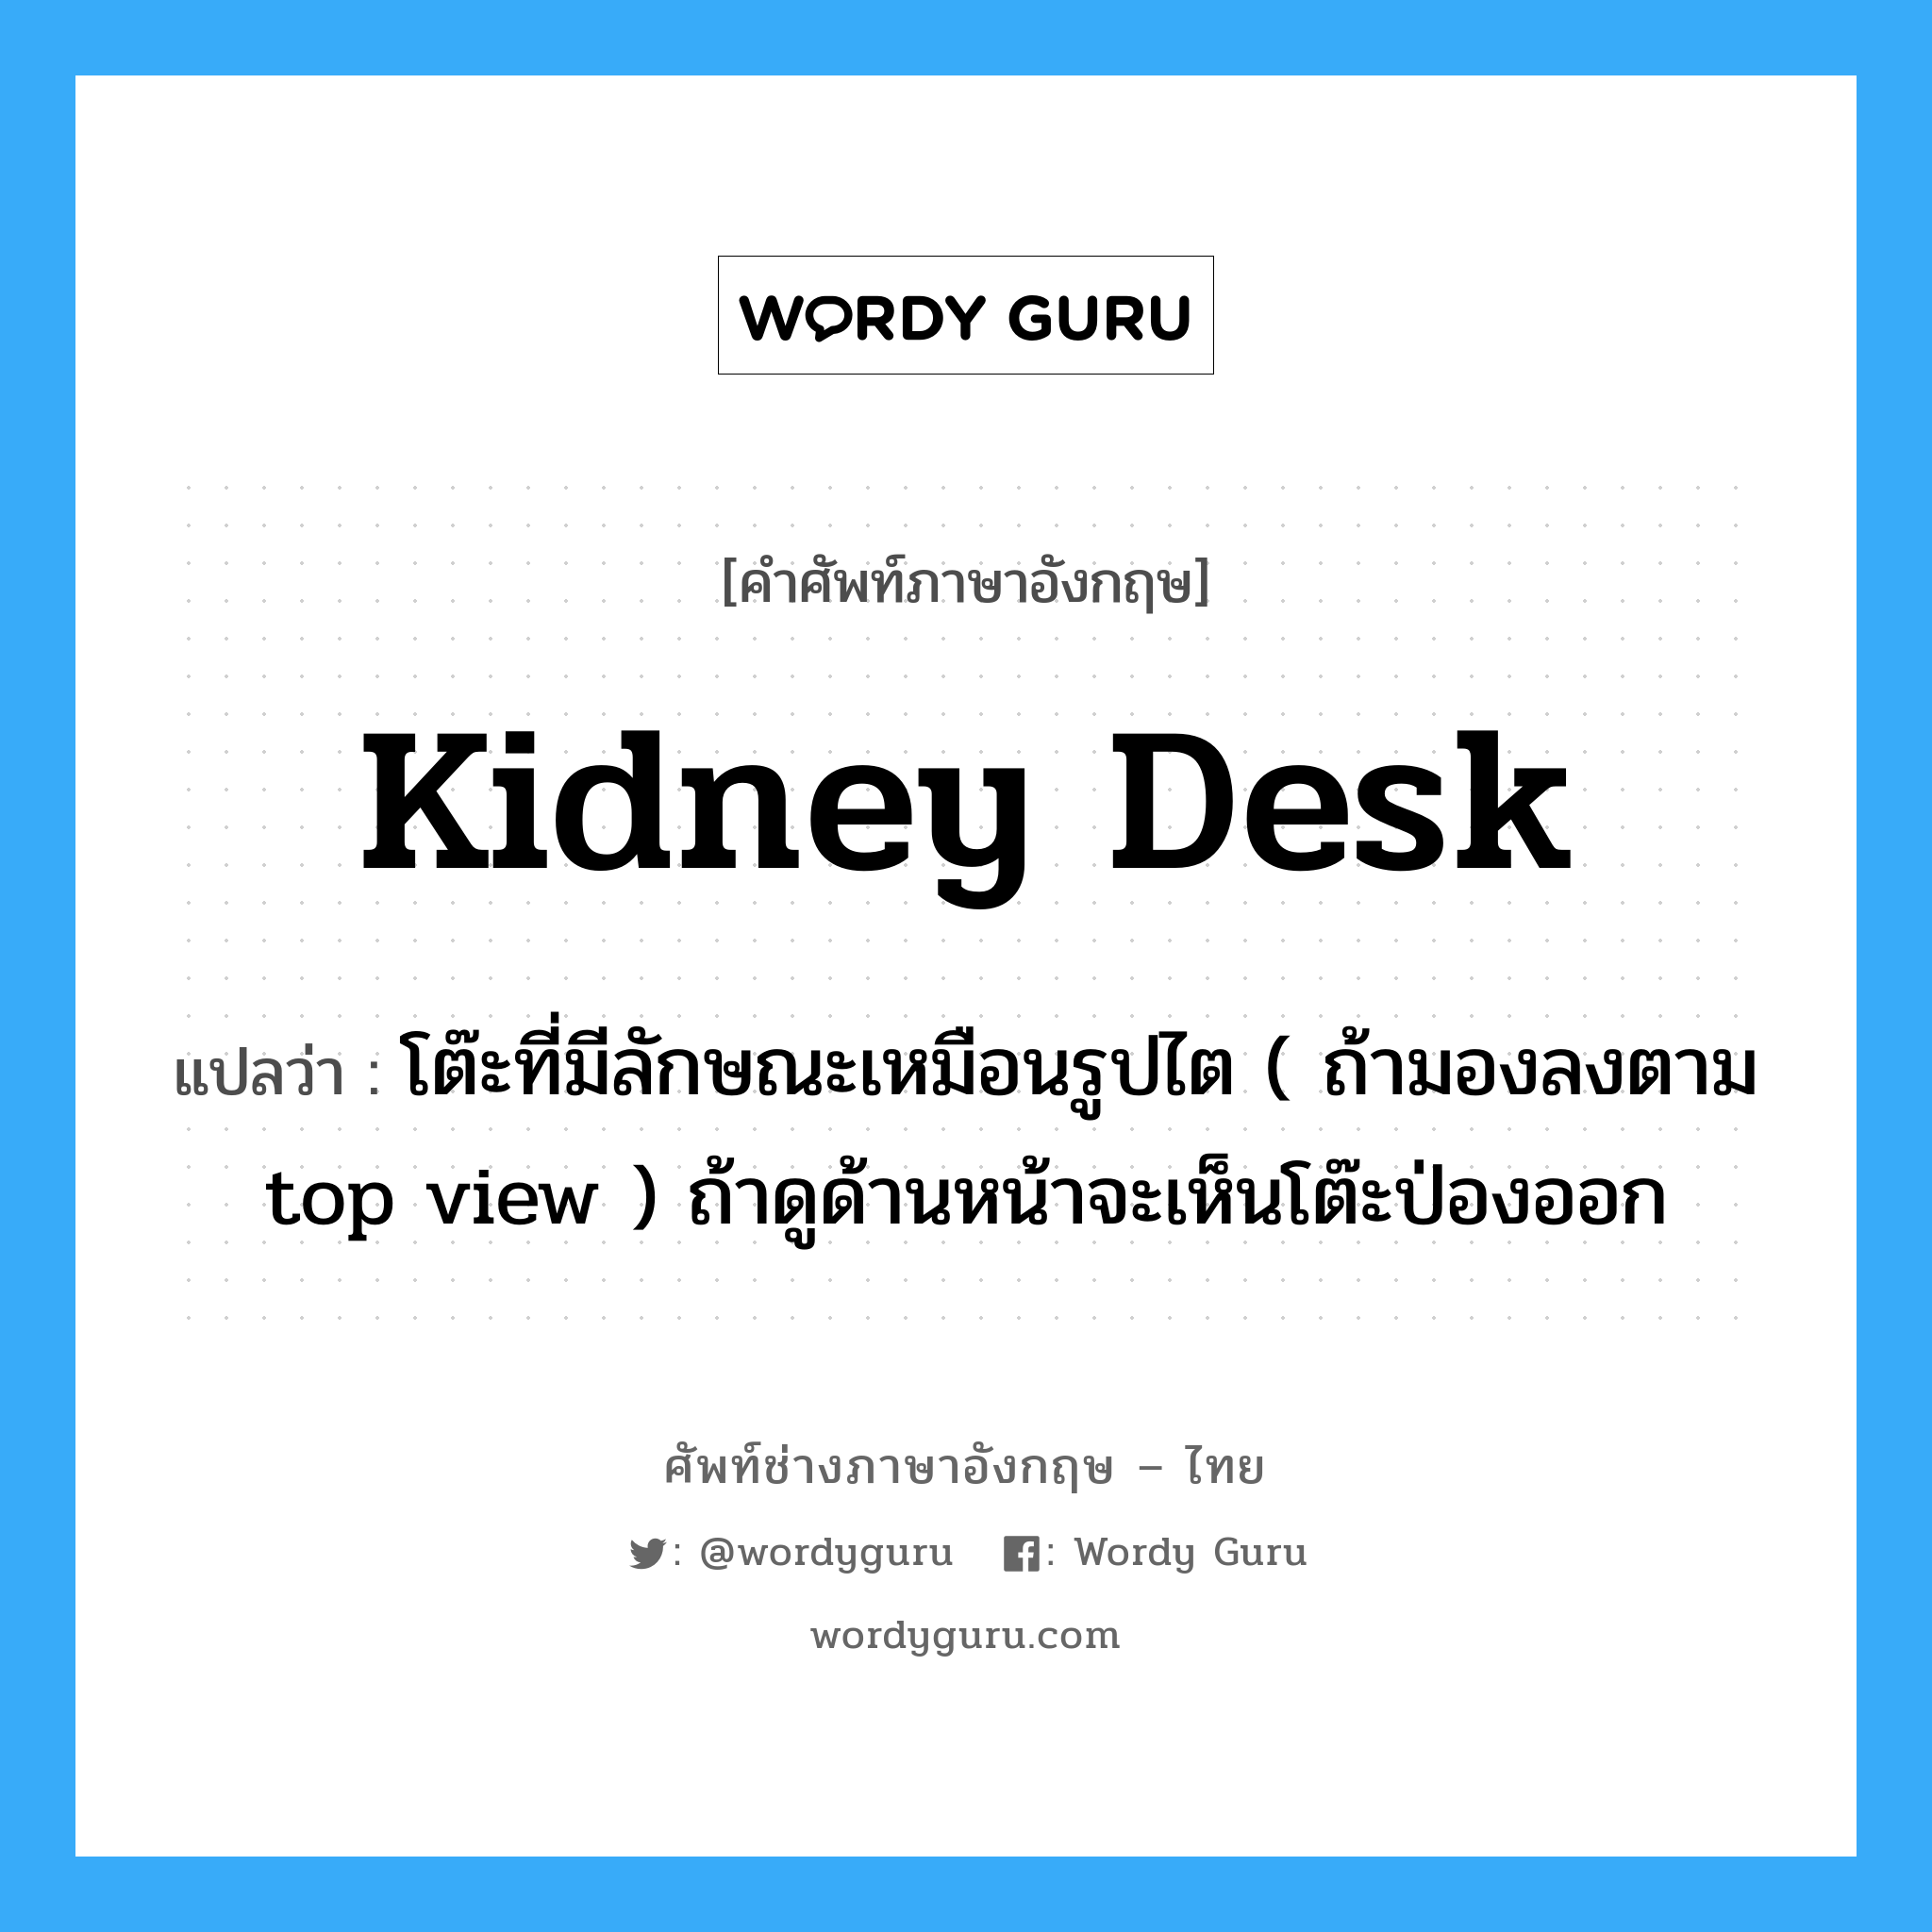 kidney desk แปลว่า?, คำศัพท์ช่างภาษาอังกฤษ - ไทย kidney desk คำศัพท์ภาษาอังกฤษ kidney desk แปลว่า โต๊ะที่มีลักษณะเหมือนรูปไต ( ถ้ามองลงตาม top view ) ถ้าดูด้านหน้าจะเห็นโต๊ะป่องออก